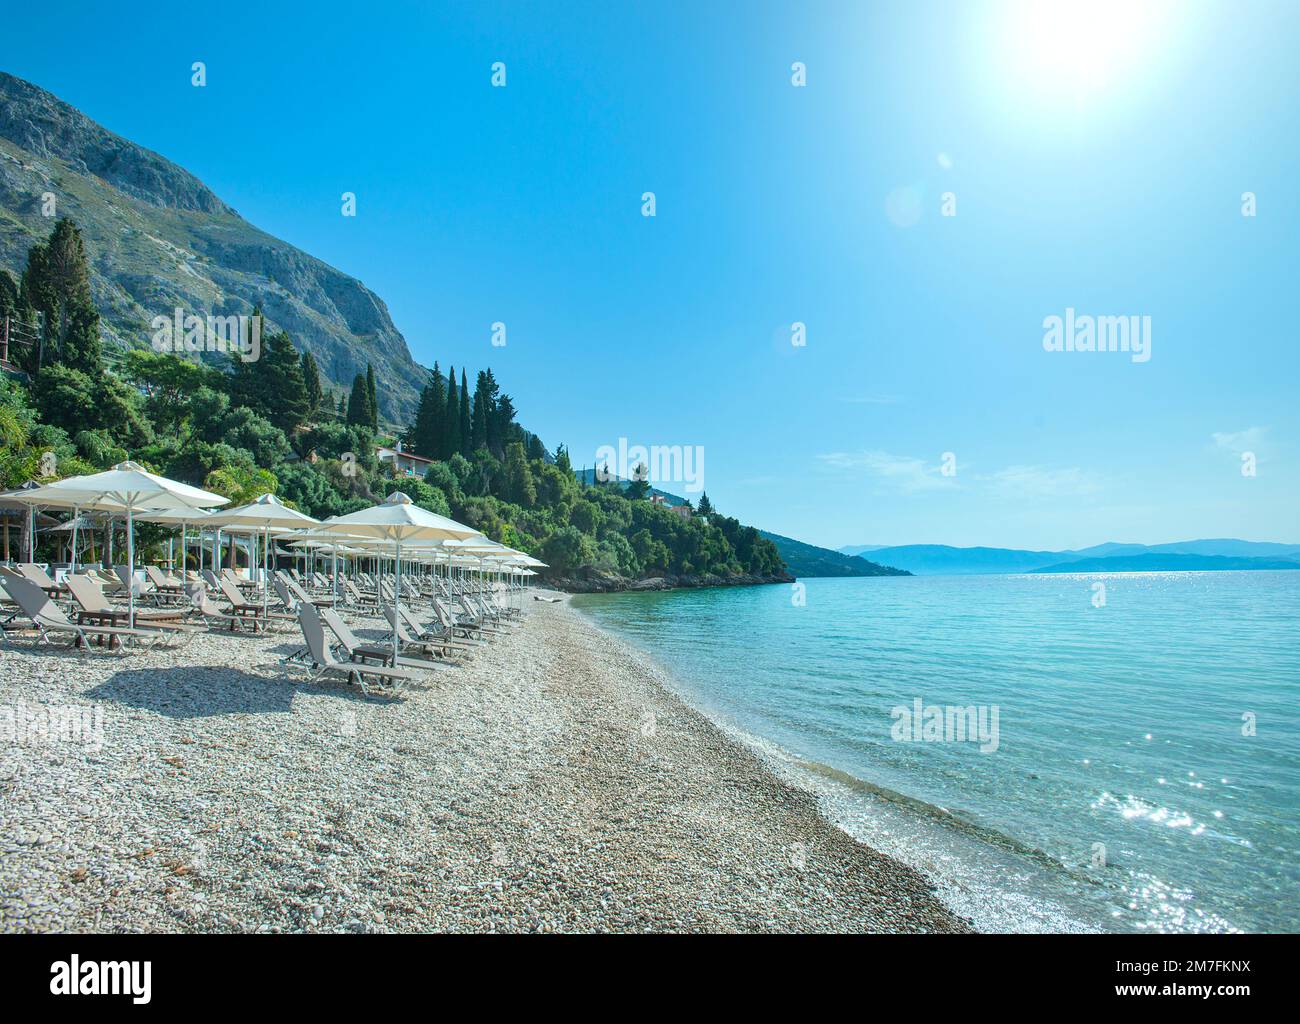 Barbati beach, Corfu, Ionian islands, Greece Stock Photo